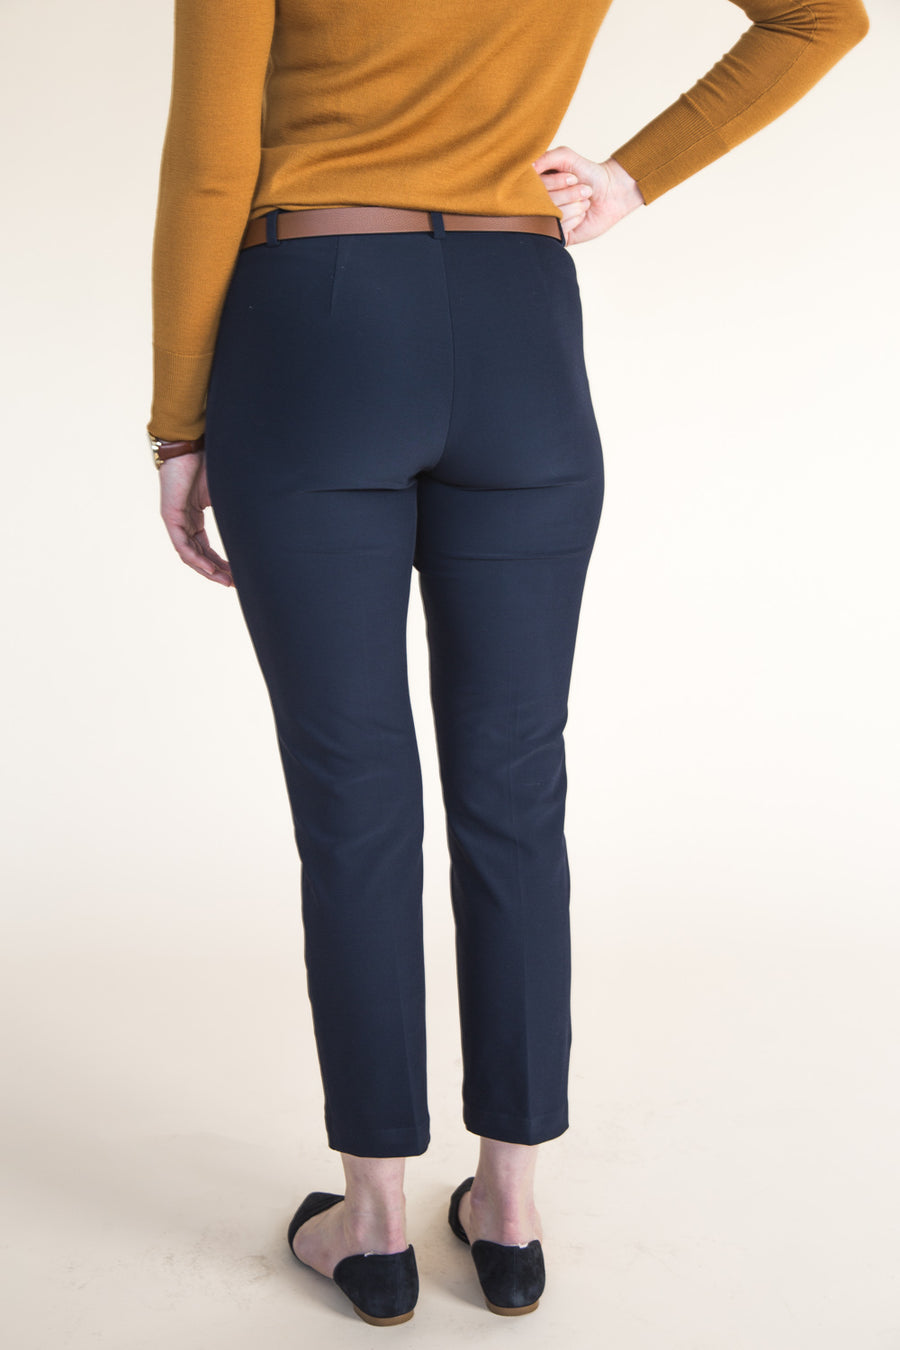 Sasha Trousers Pattern // Stretch Pants Pattern // by Closet Core Patterns